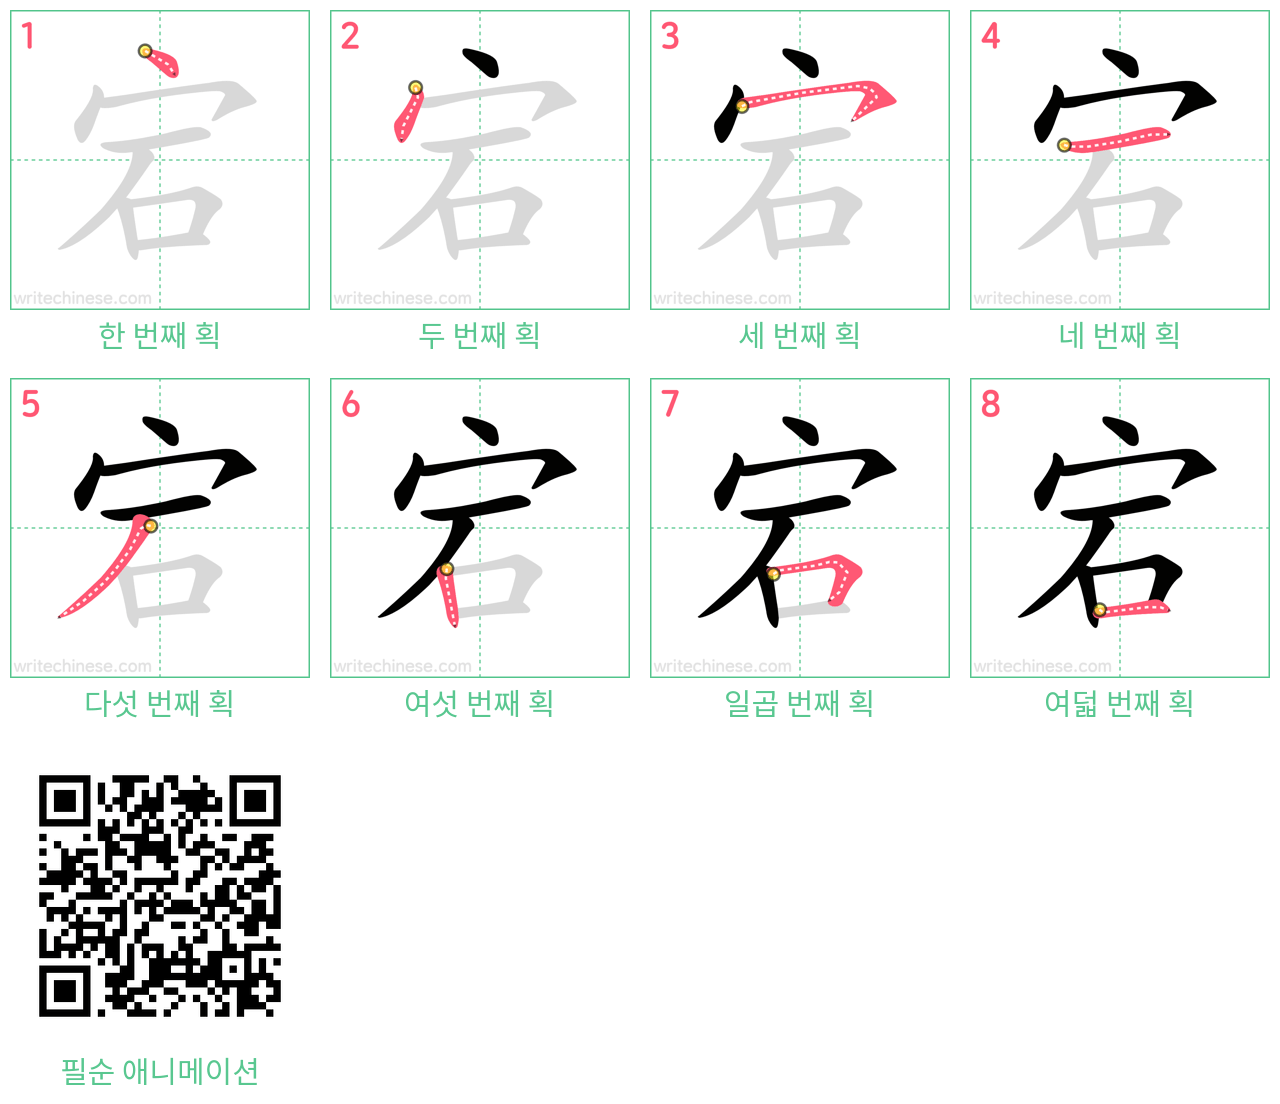 宕 step-by-step stroke order diagrams